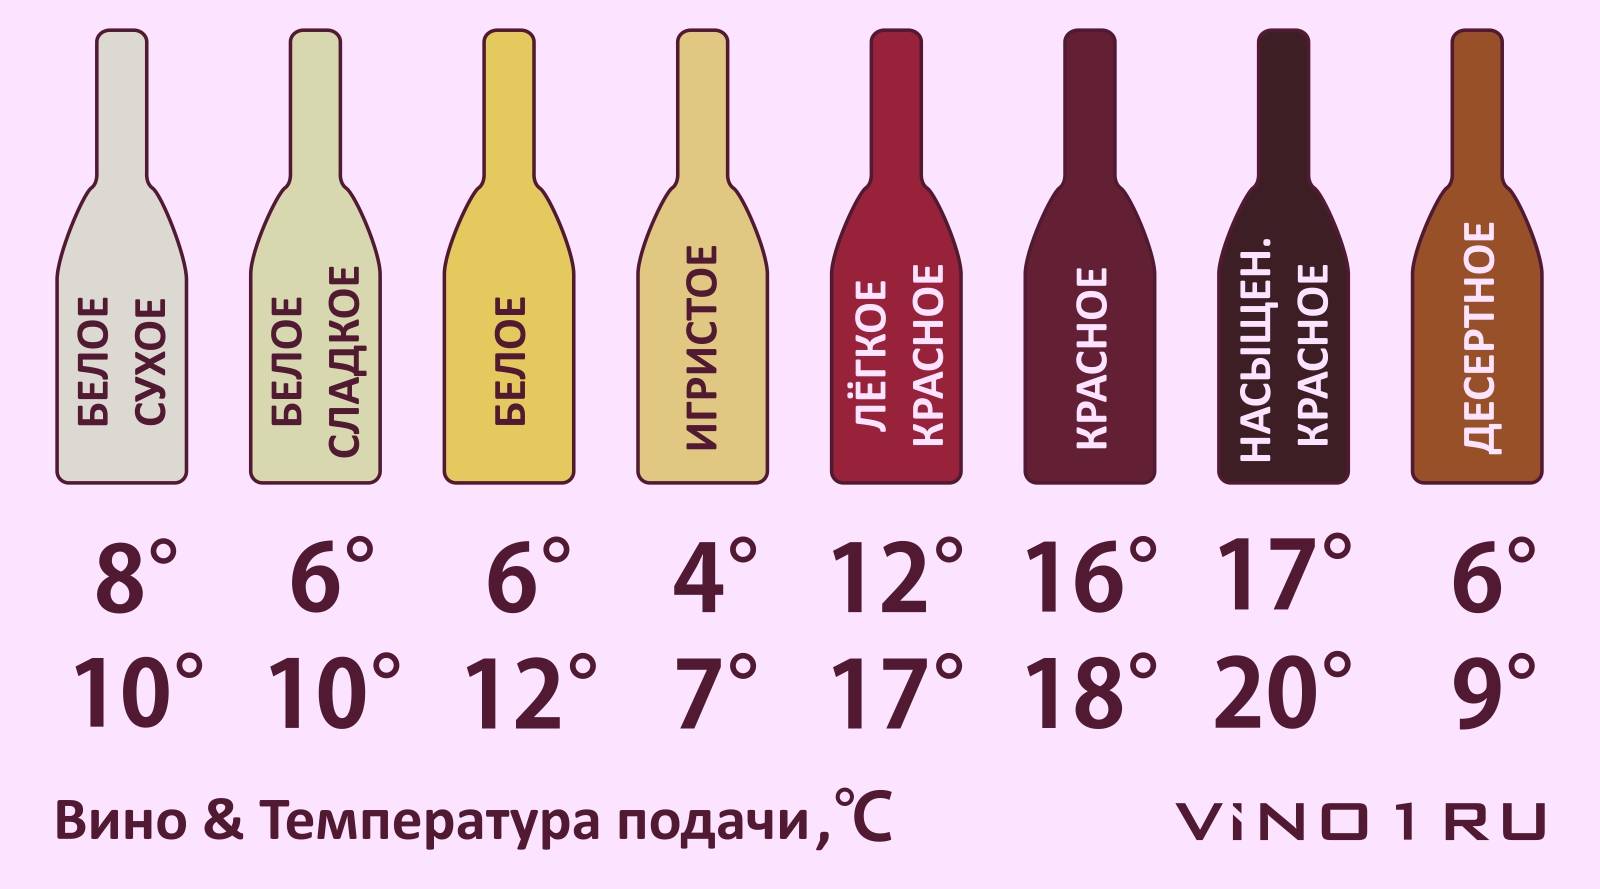 Сухое вино: определение, характеристики, отличия от других разновидностей вин